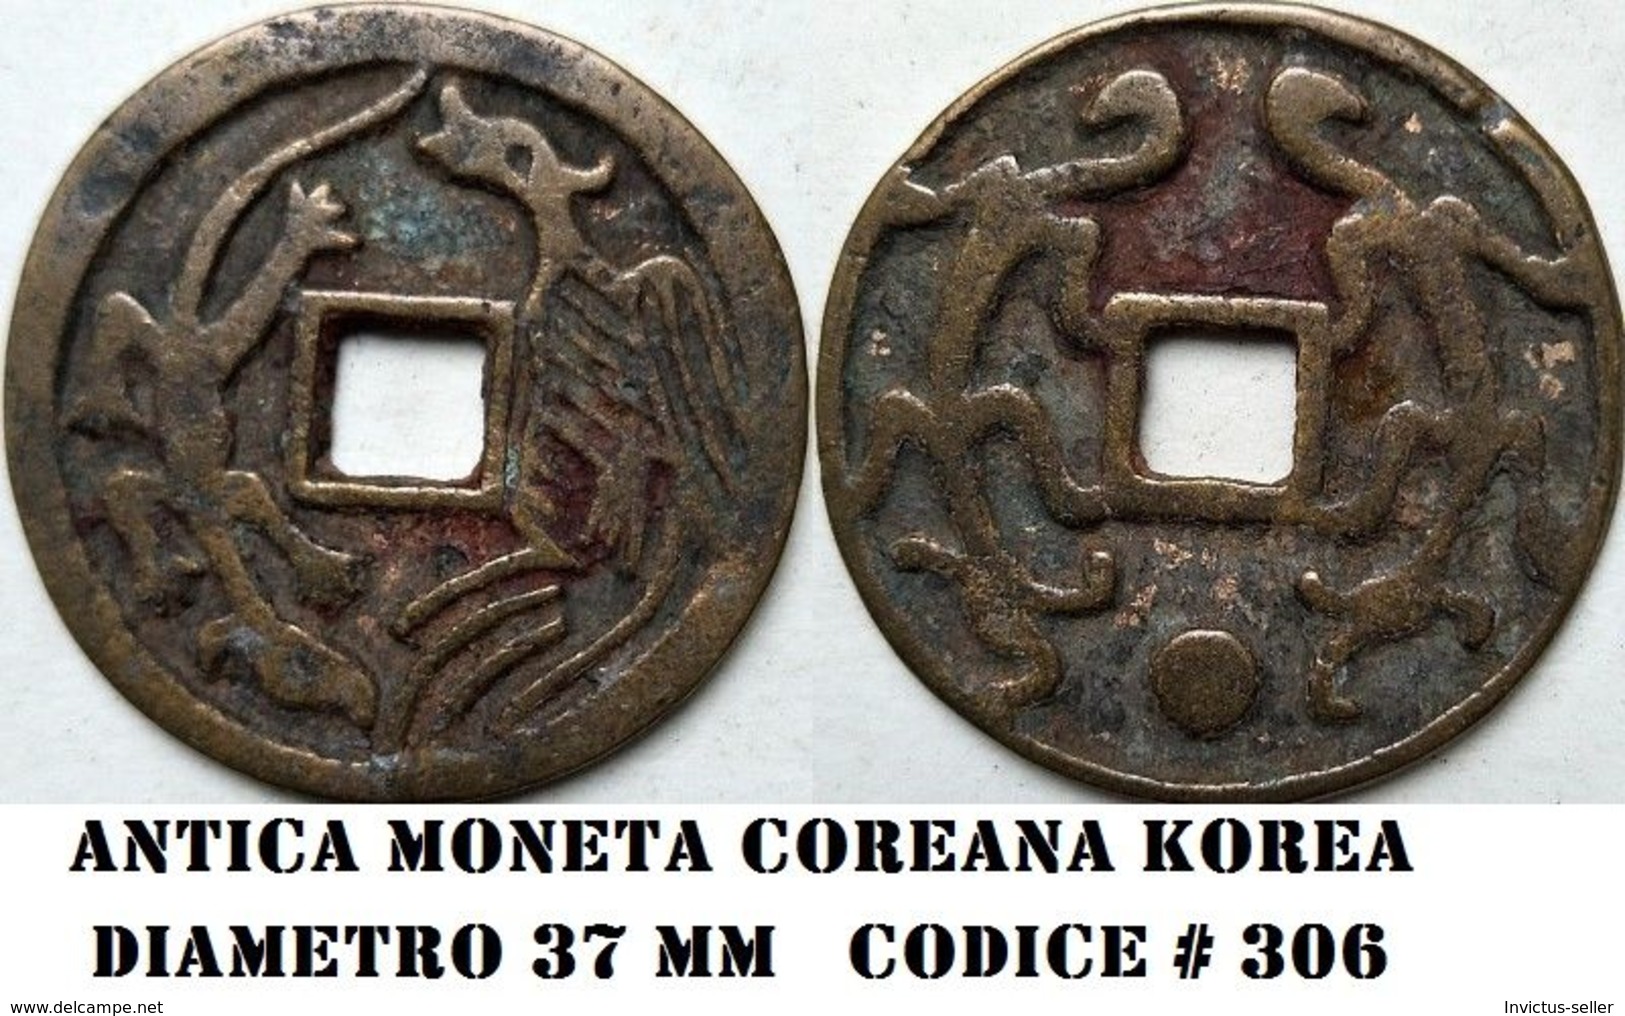 KOREA ANTICA MONETA COREANA PERIODO IMPERIALE IMPERIALE COREANE COINS  PIECES MONET COREA IMPERIAL COD #306 - Korea, North